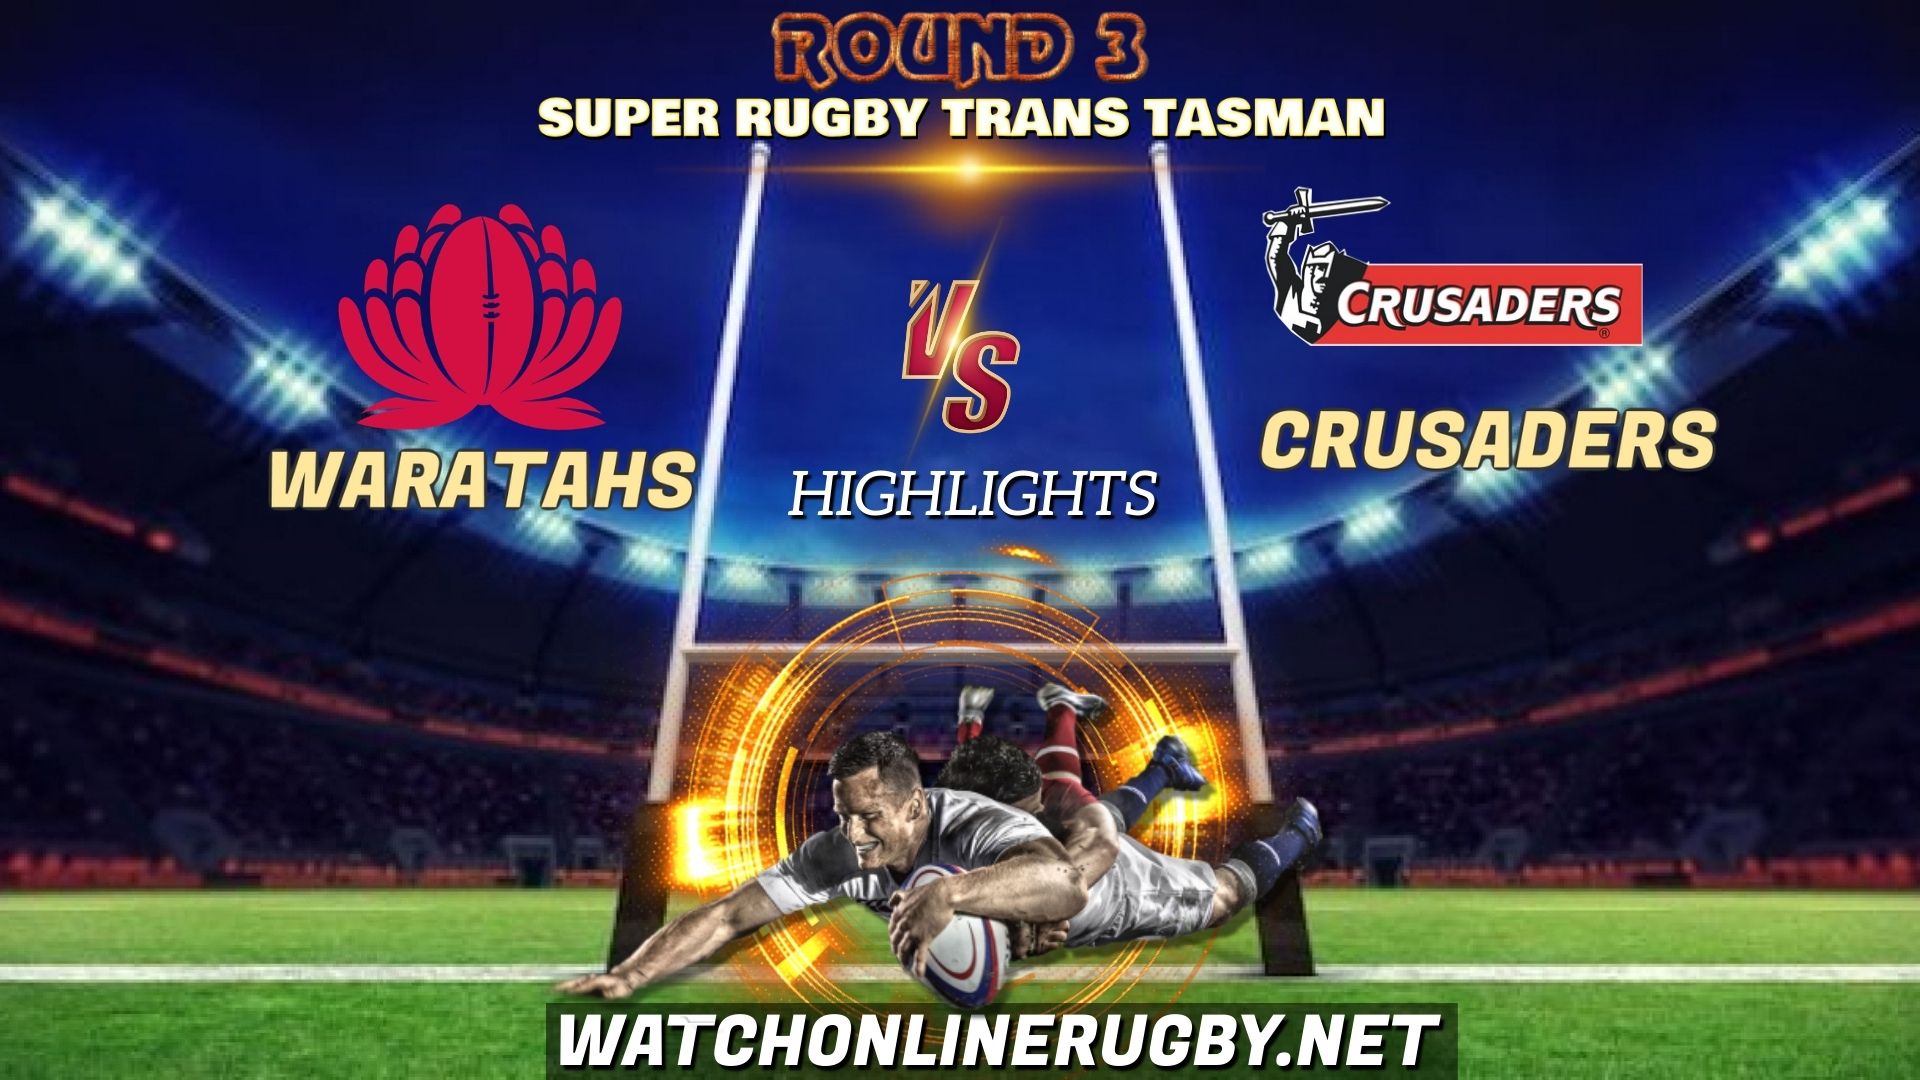 Waratahs Vs Crusaders Super Rugby Trans Tasman 2021 RD 3